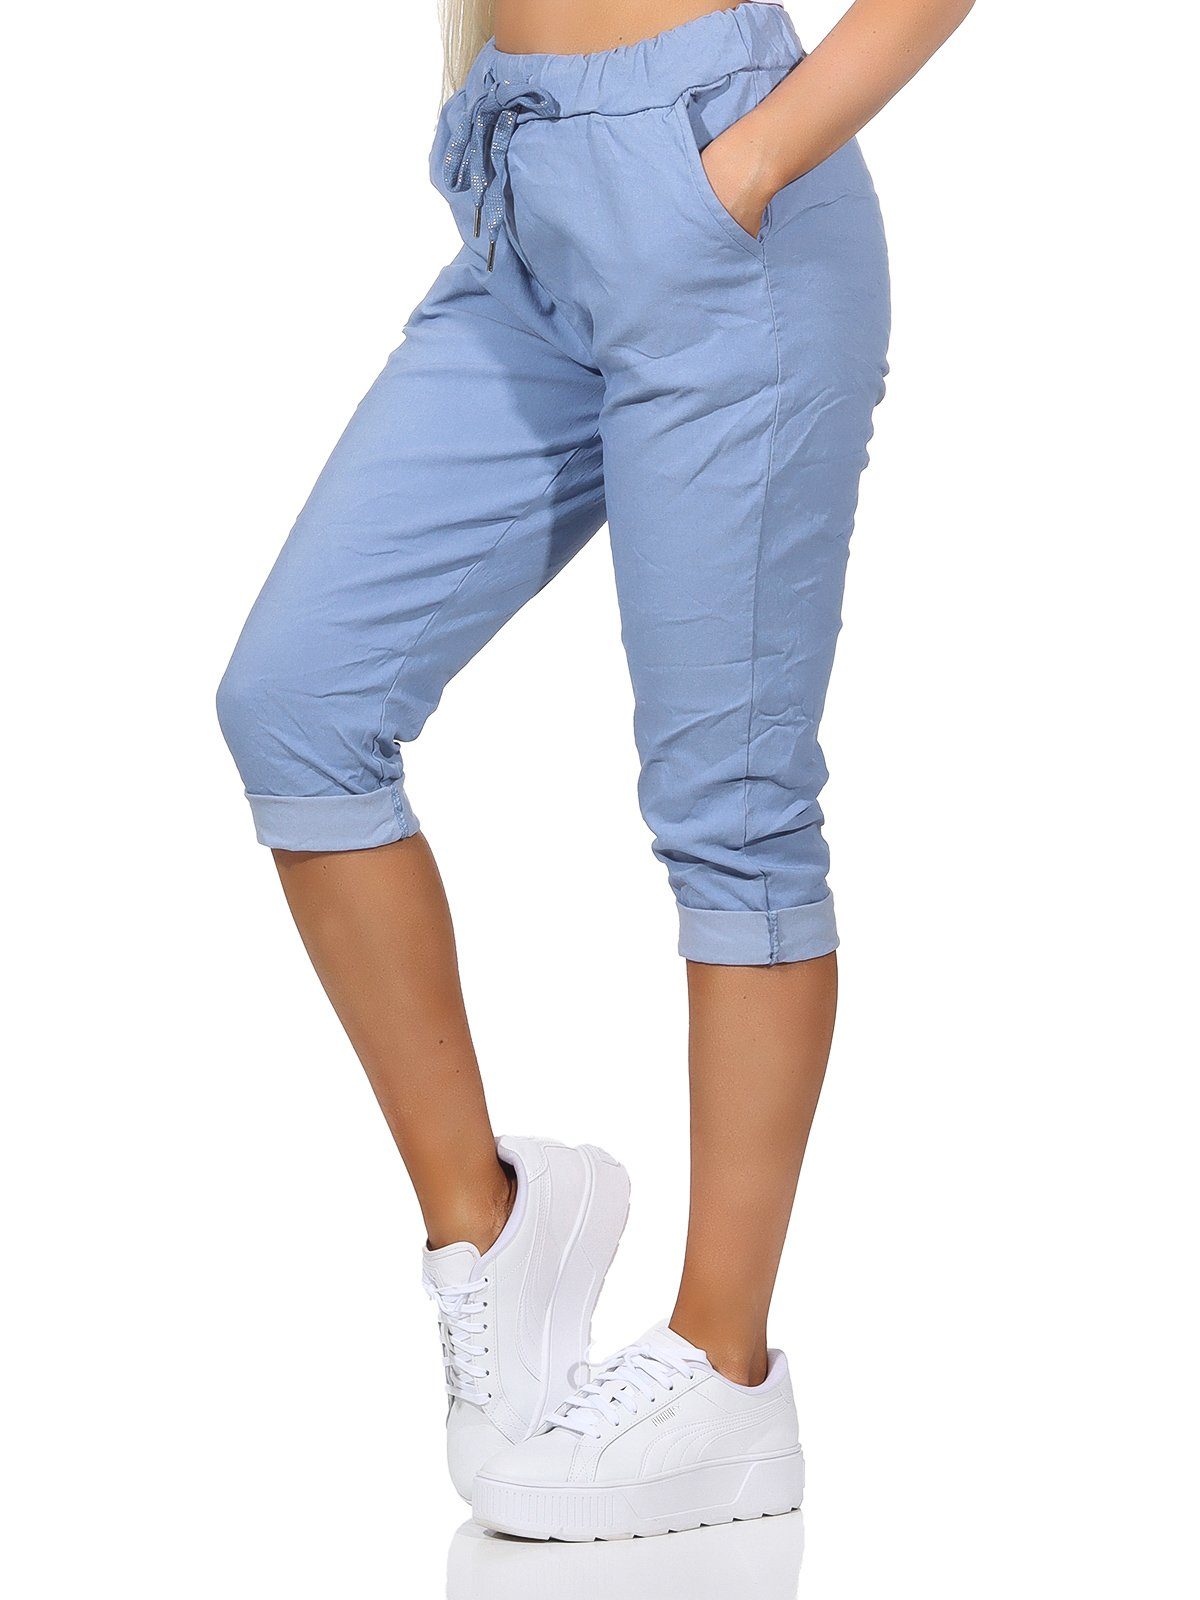 Taschen Hose Kordelzug, in Damenmode sommerlichen Bermuda Capri und Damen Farben, 7/8-Hose Sommerhose Aurela Kurze 36-44 Jeans